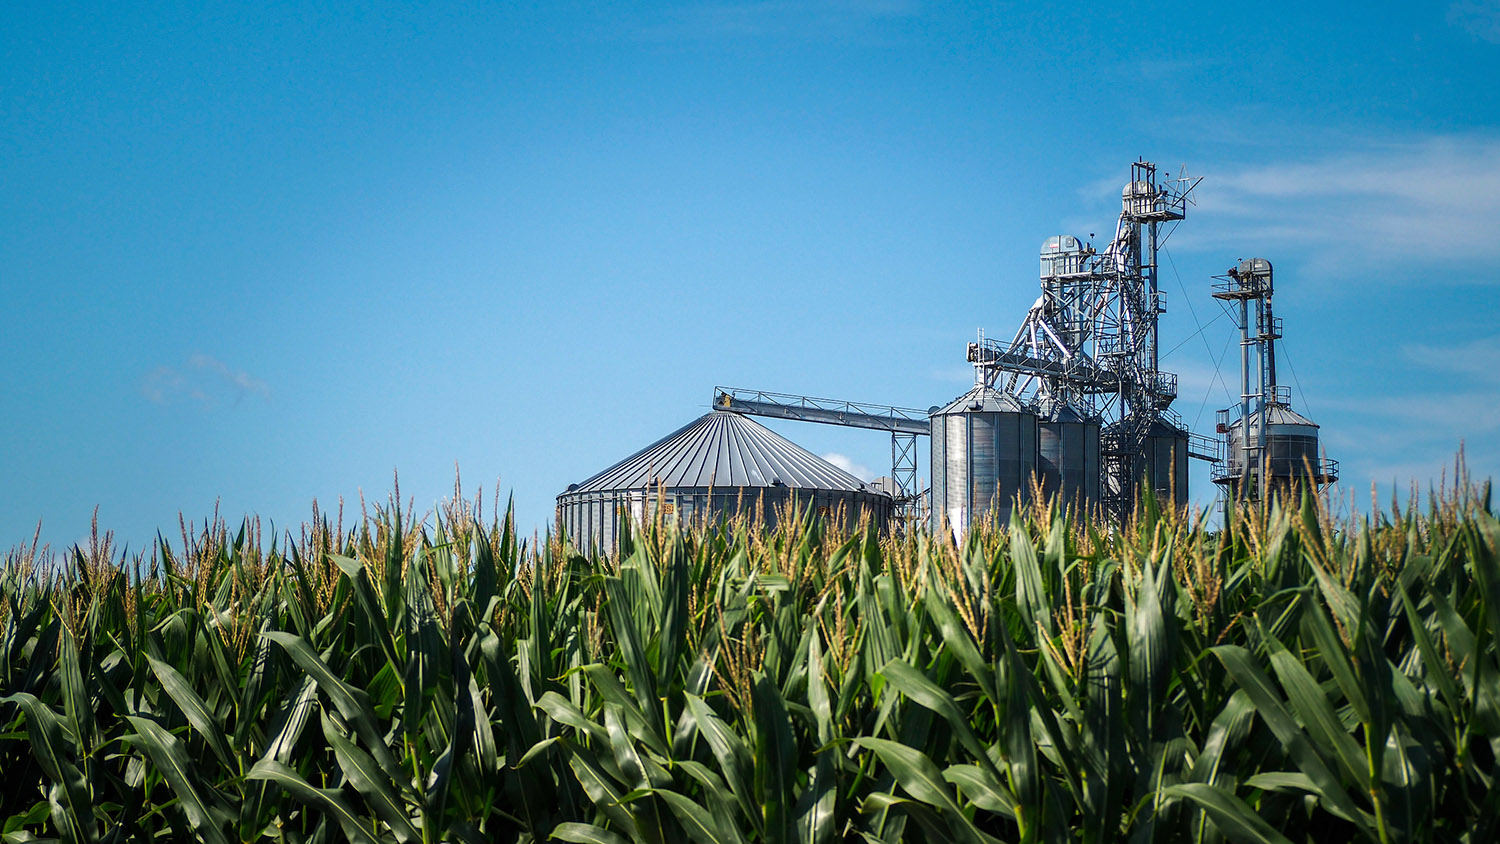 NE Ag expo field day in Shawboro, NC. Corn frames a grain silo on the farm.